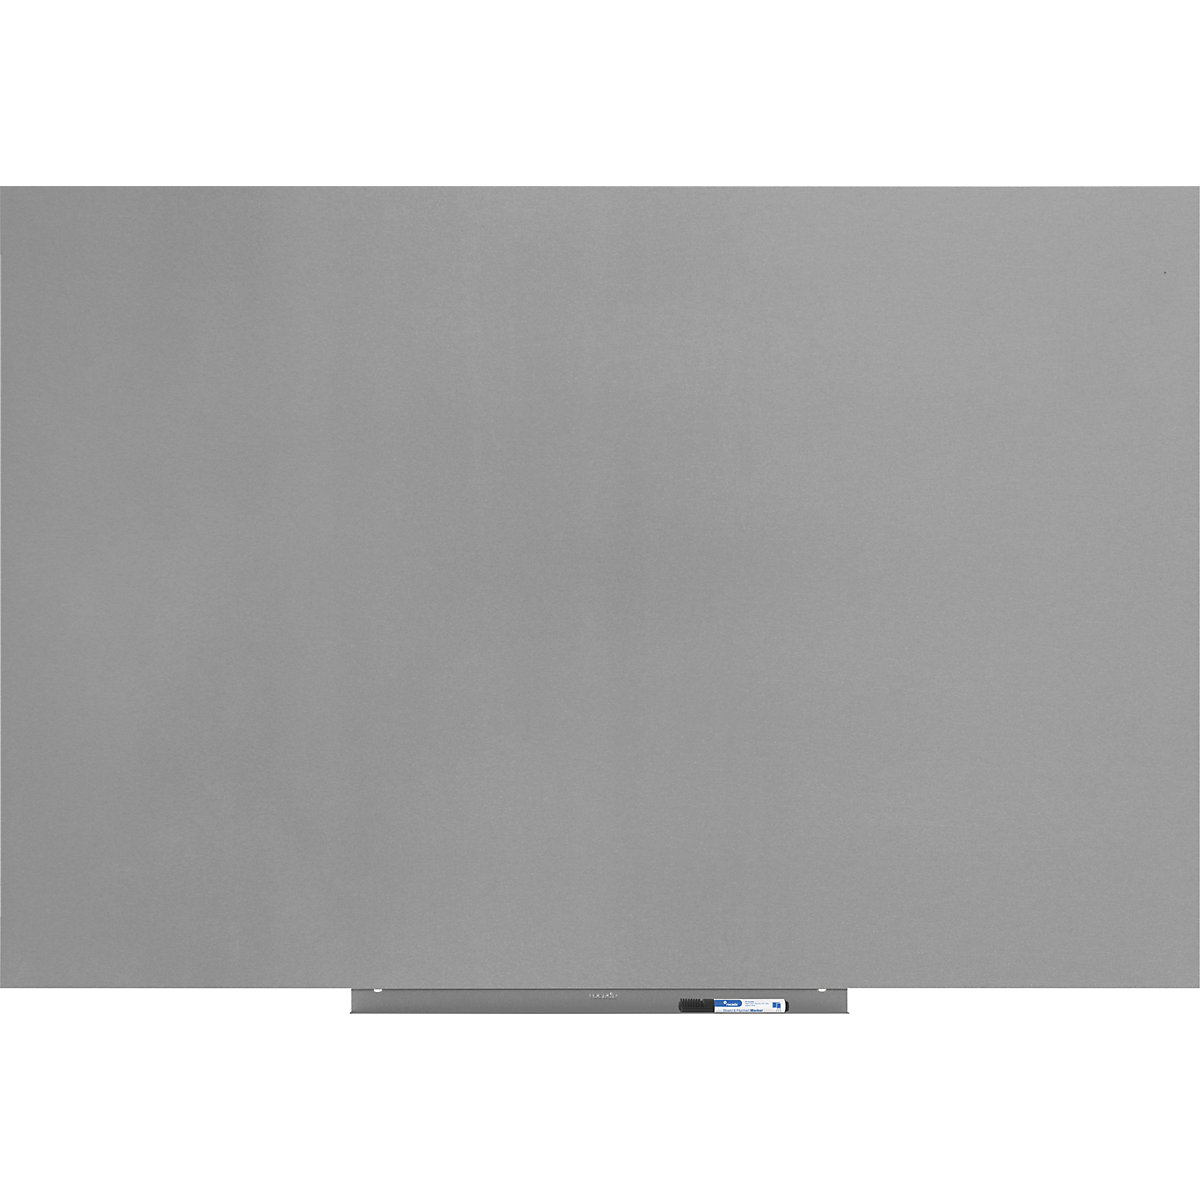 Whiteboard-Modul, PRO-Version – Stahlblech, beschichtet, BxH 1000 x 1500 mm, silber-19